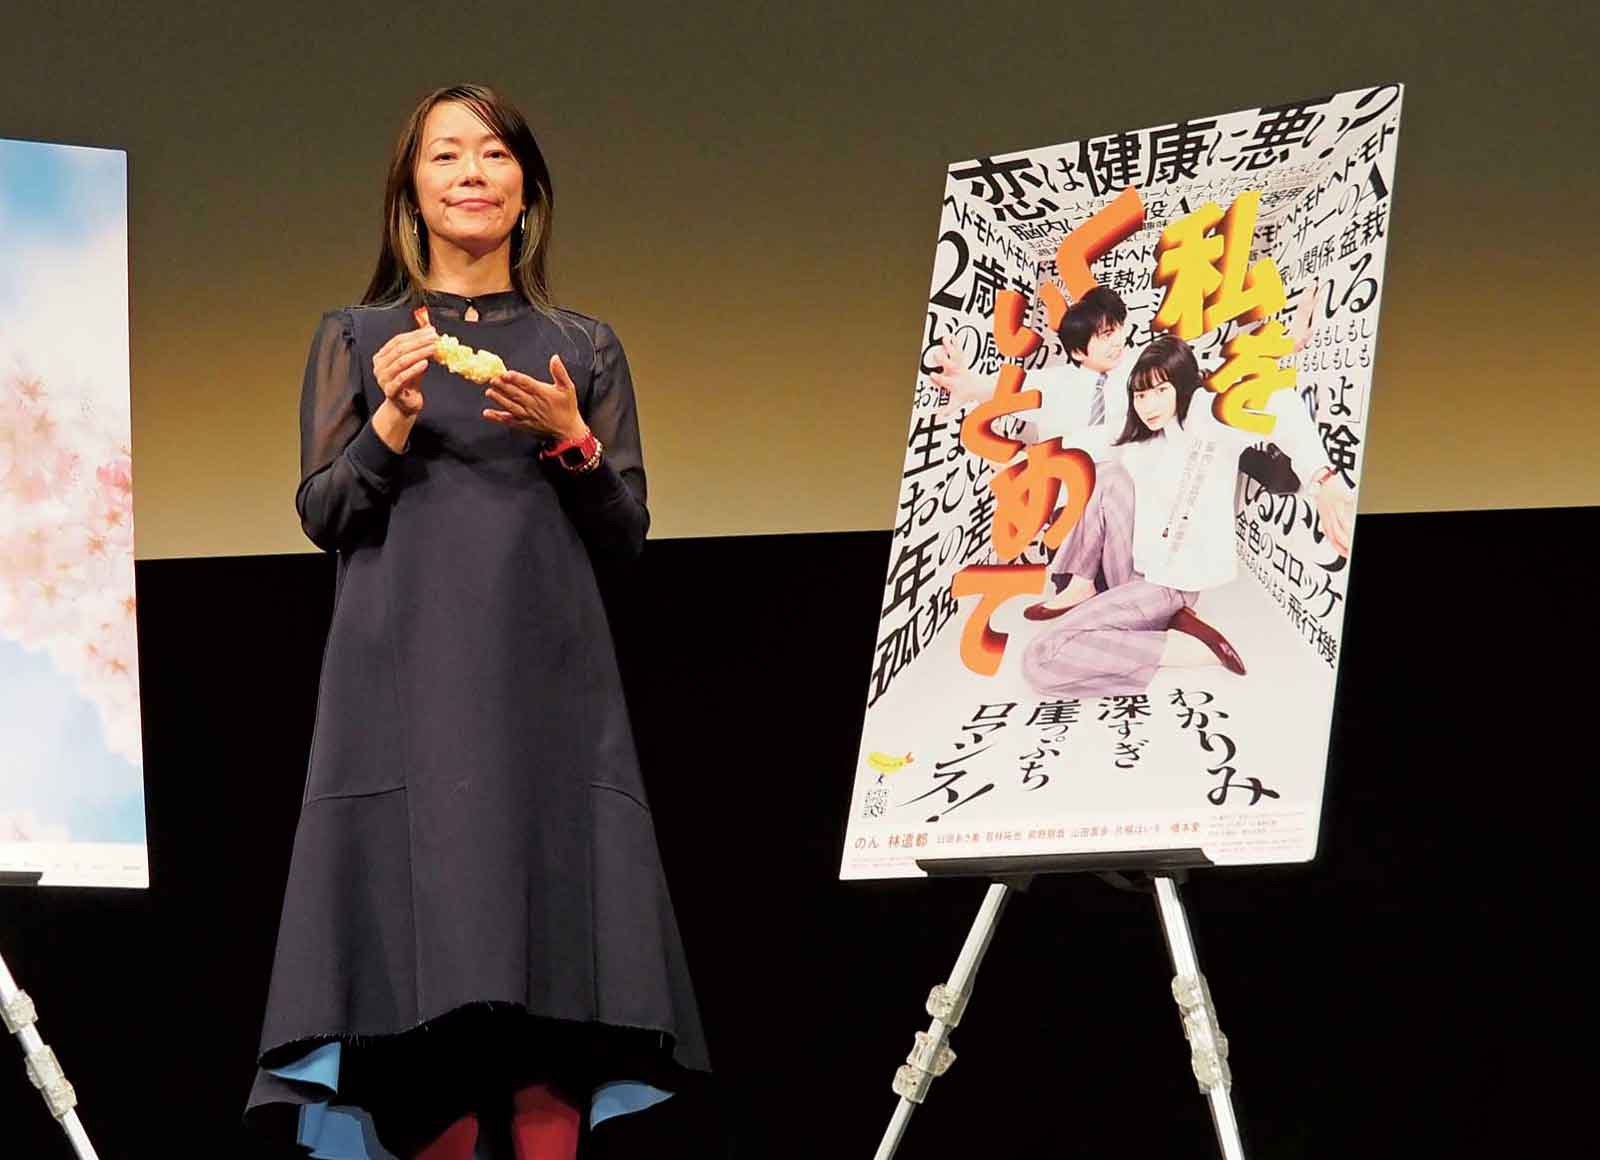  『私をくいとめて』ポスターと大九明子監督。 えび天の食品サンプルの意味するところは、映画を観てのお楽しみ。